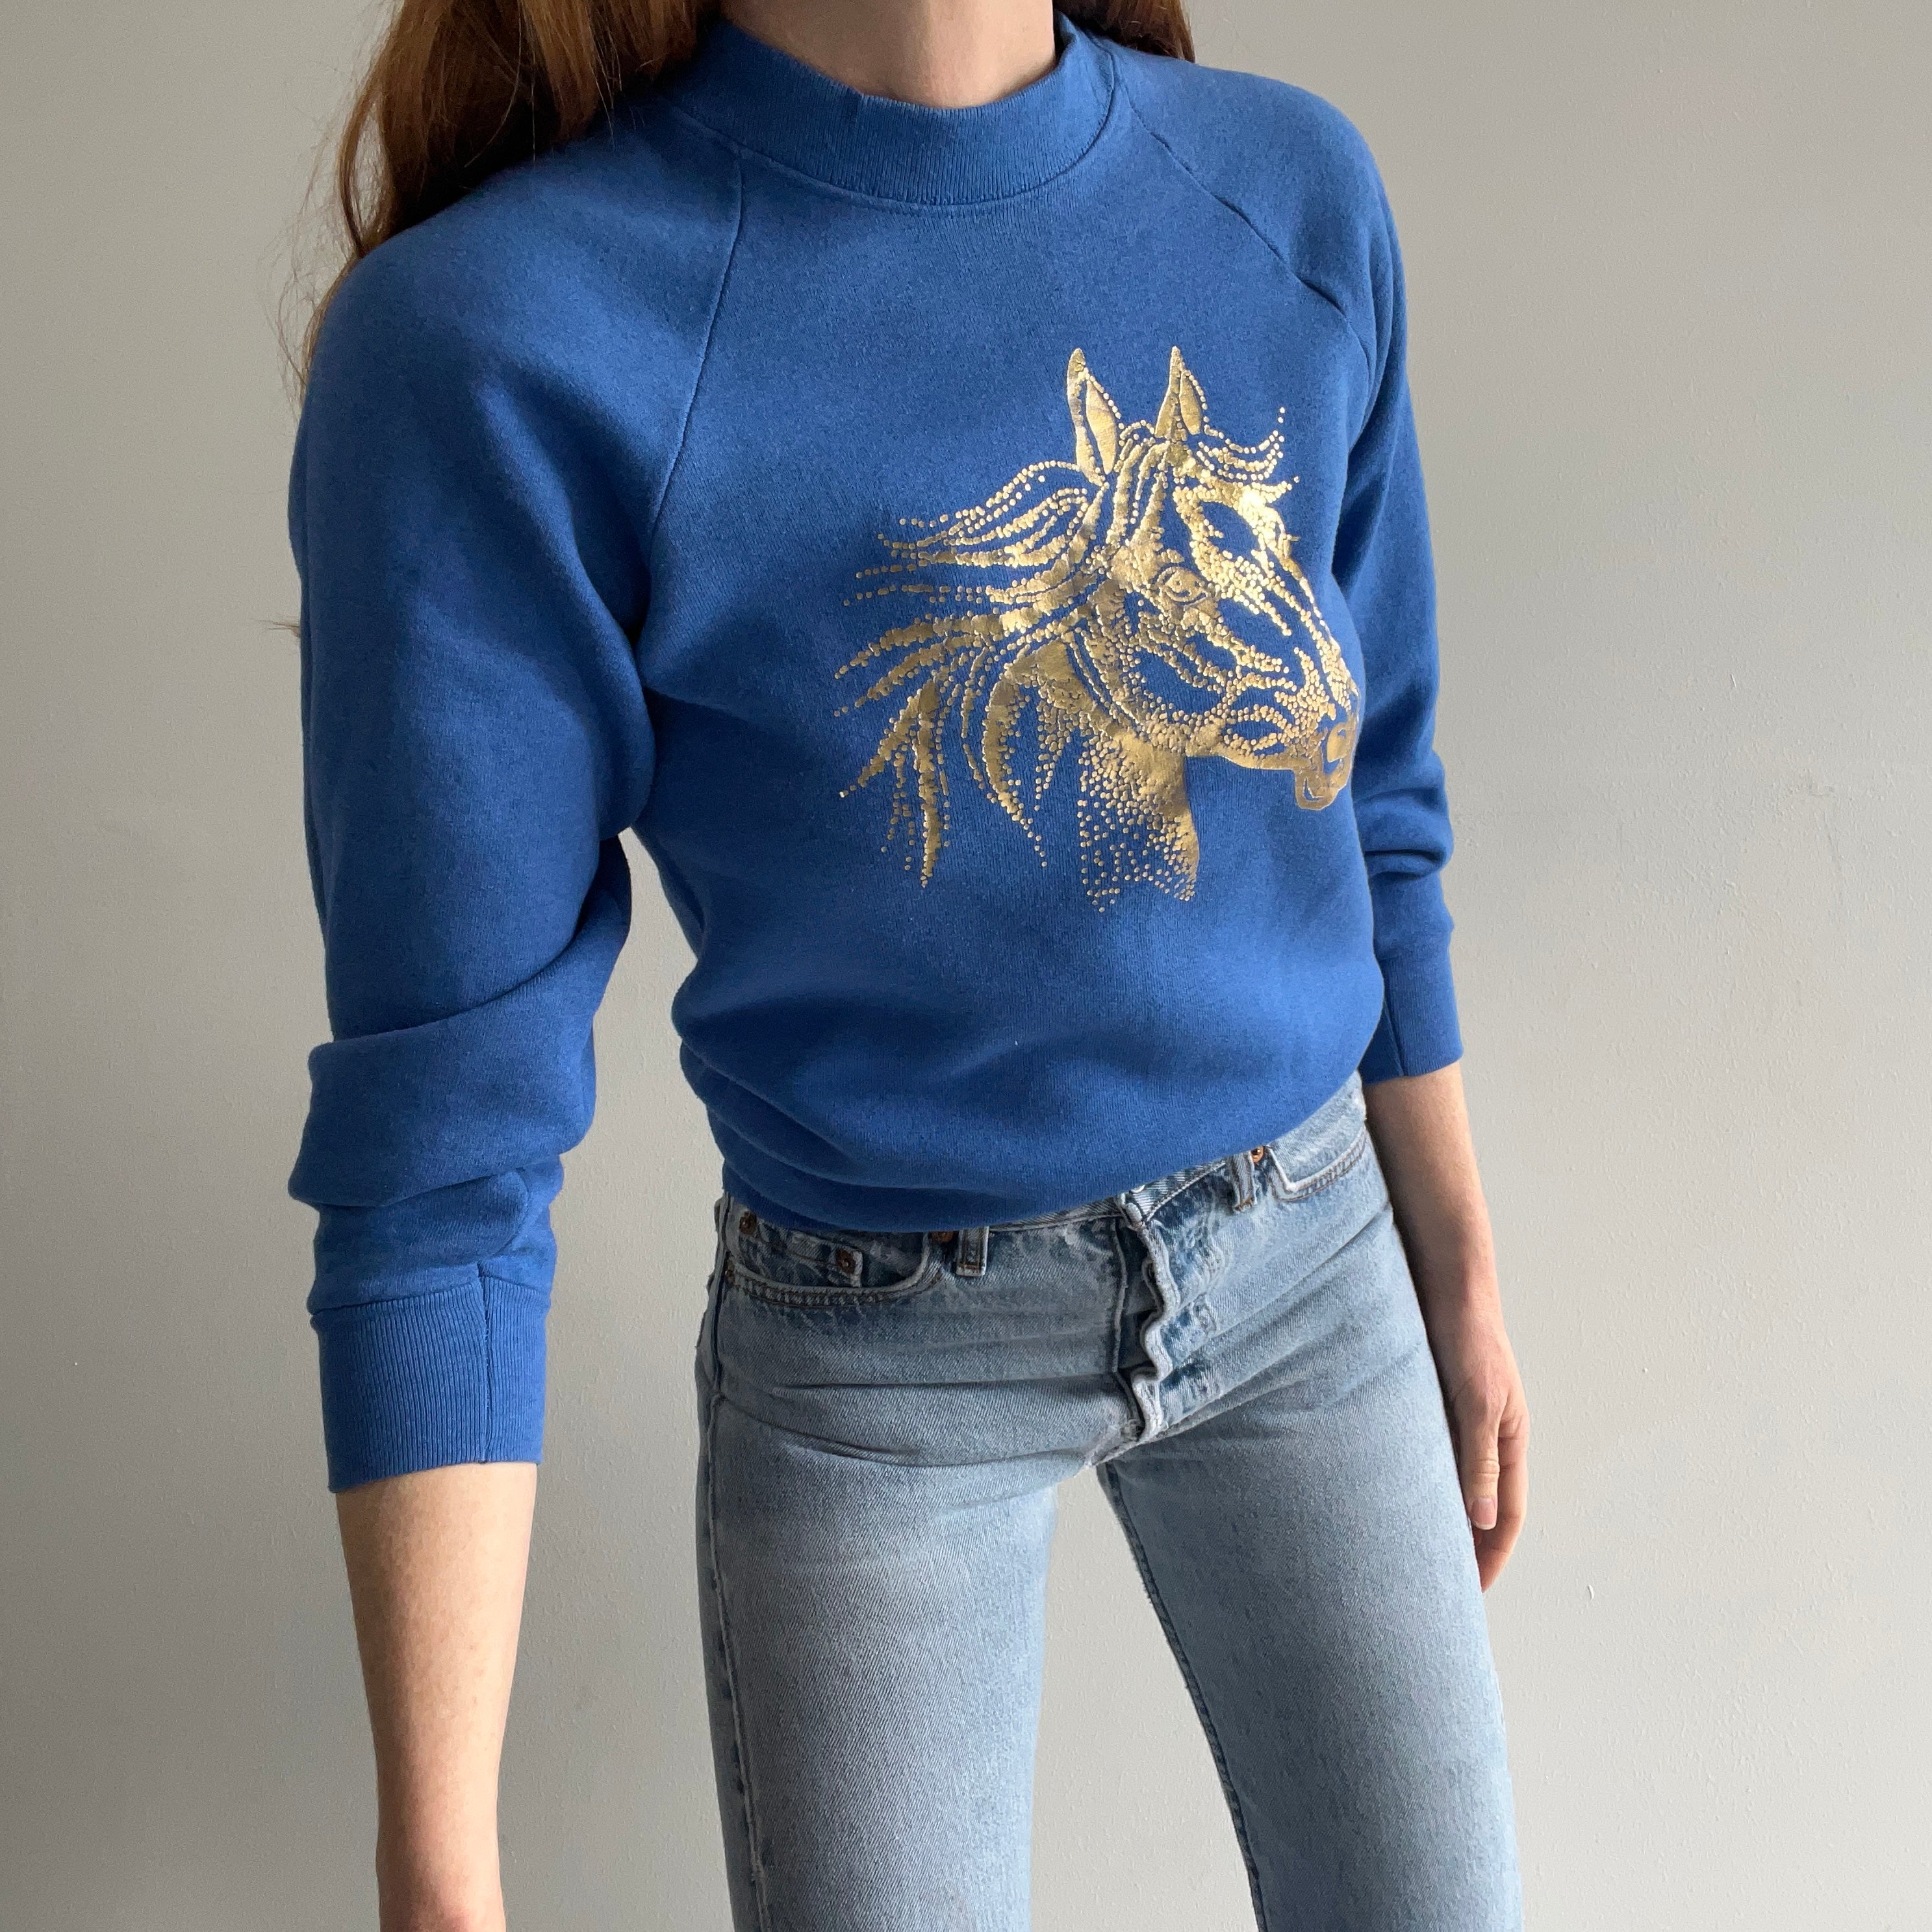 1980s Metallic Gold Horse Head Sweatshirt - Never? Worn